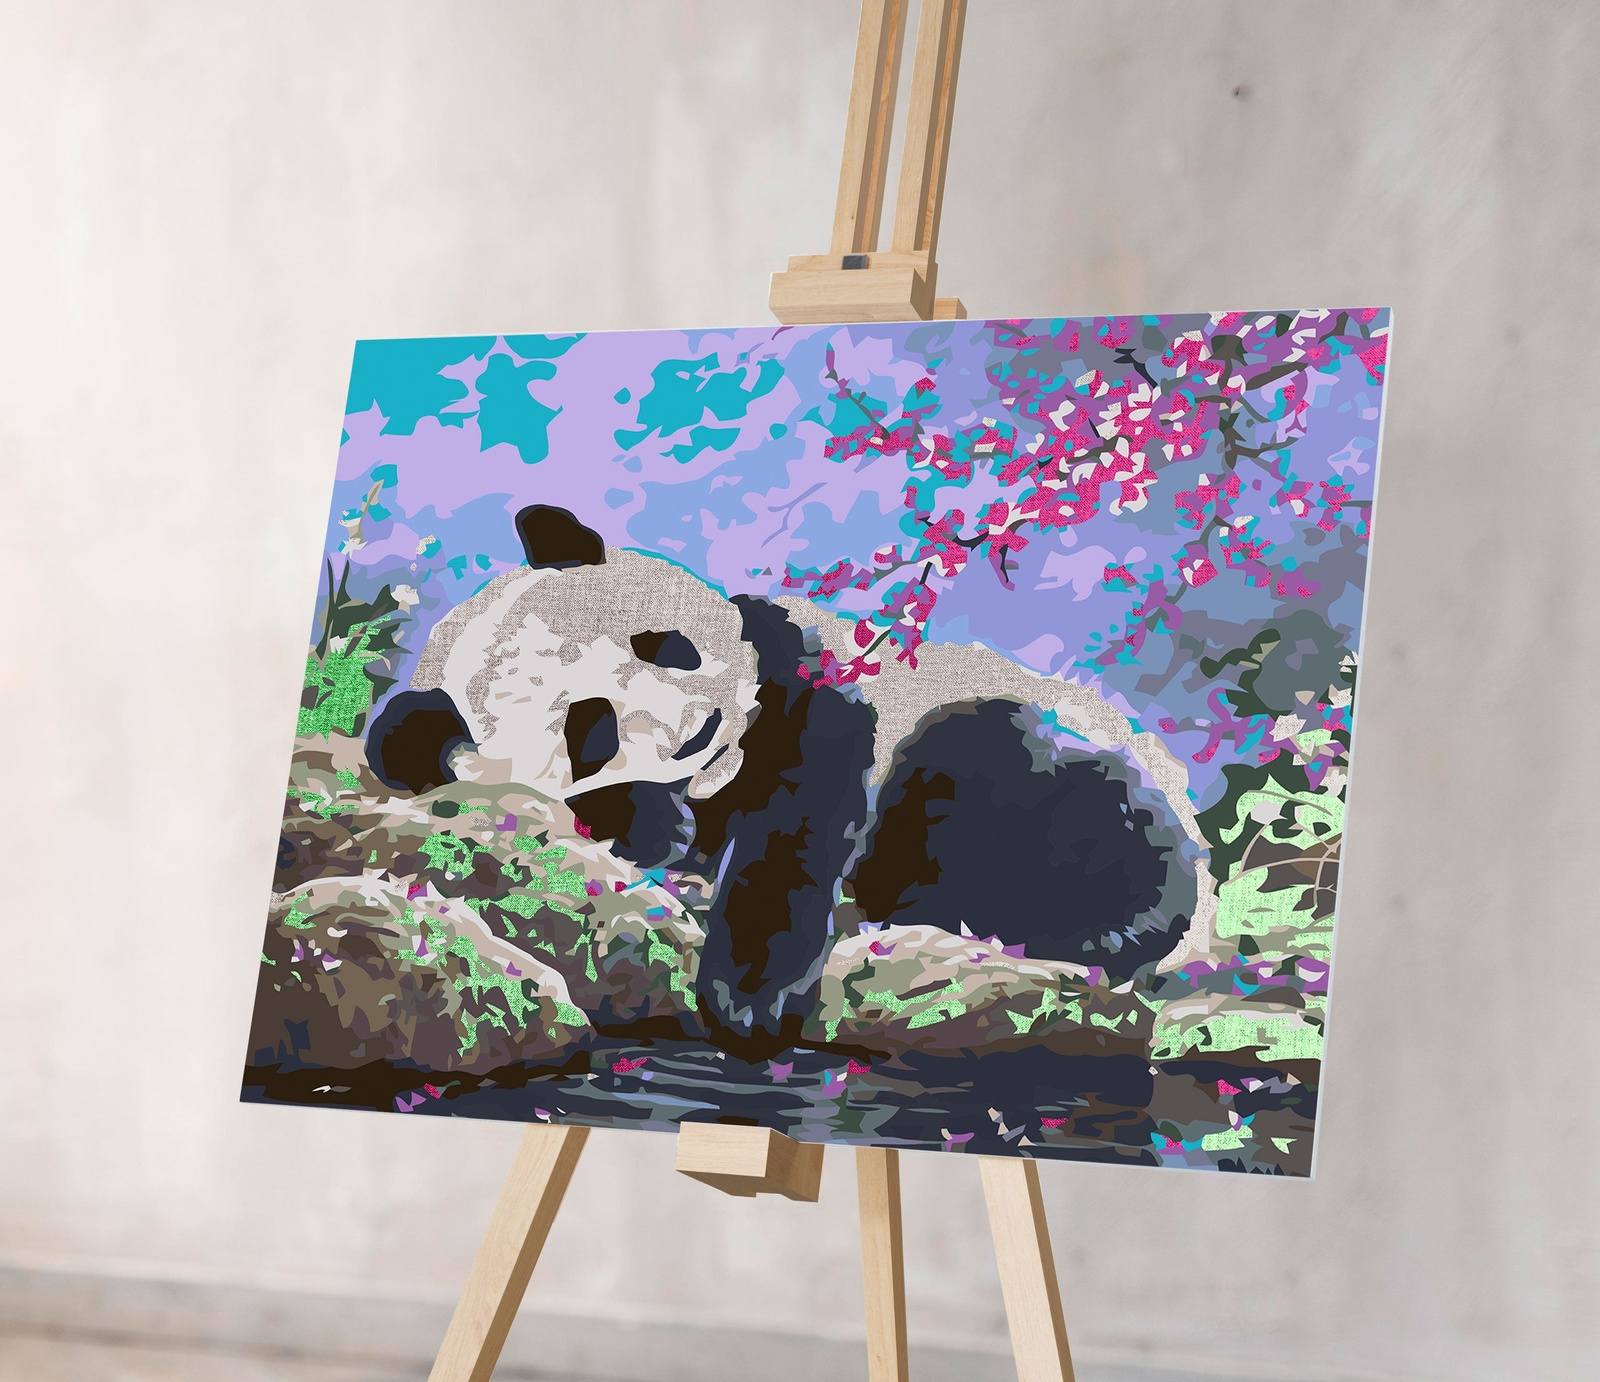 Mieganti Panda (Nk0447)